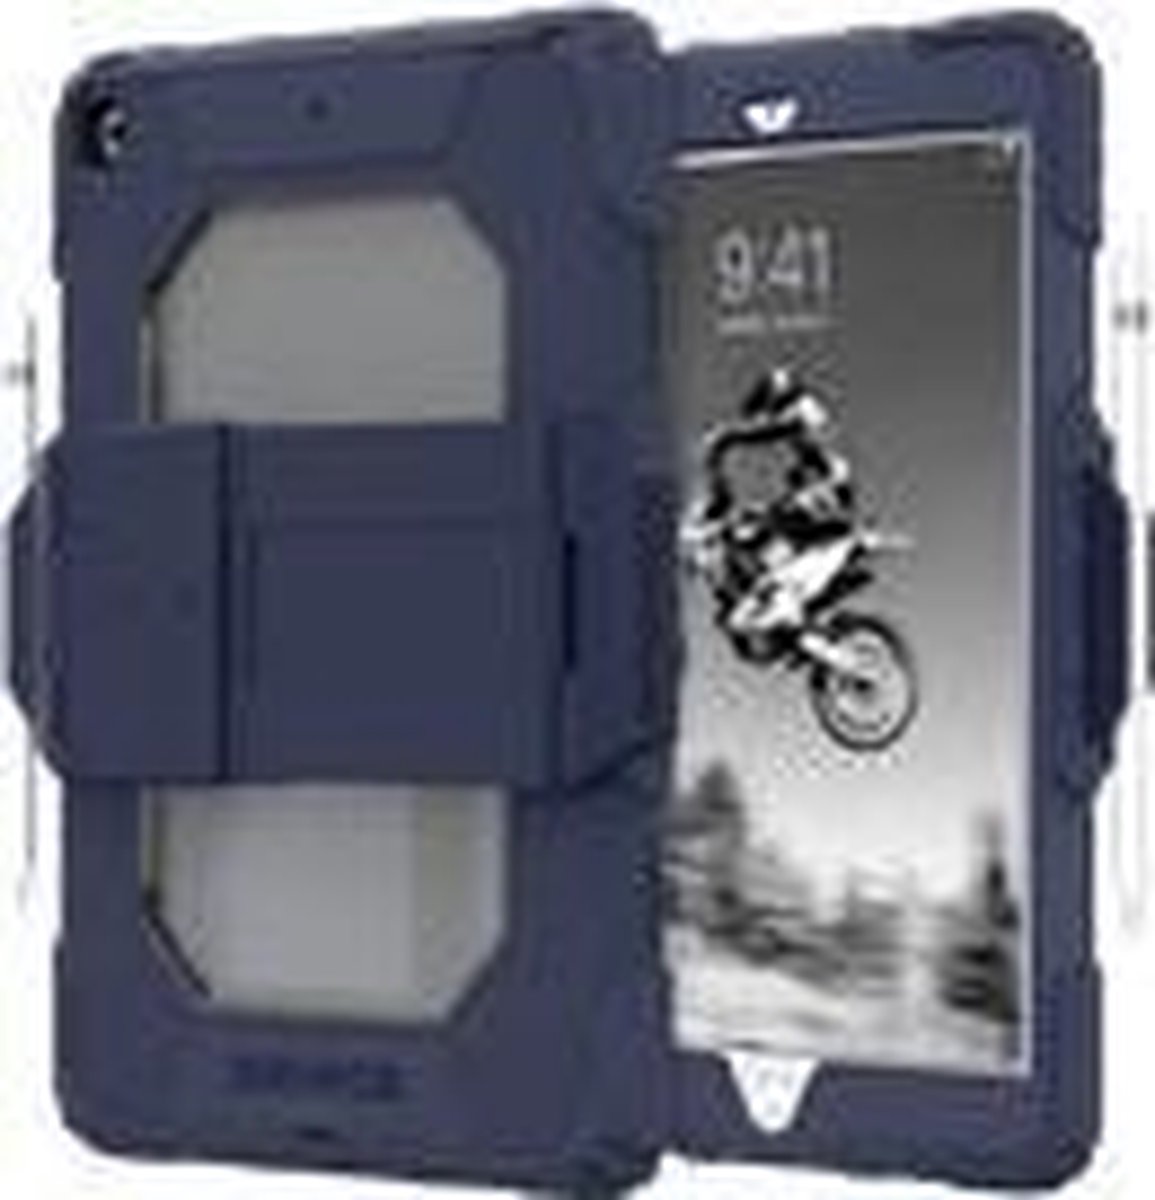 Griffin Survivor All-Terrain Case iPad 10.2 inch blauw